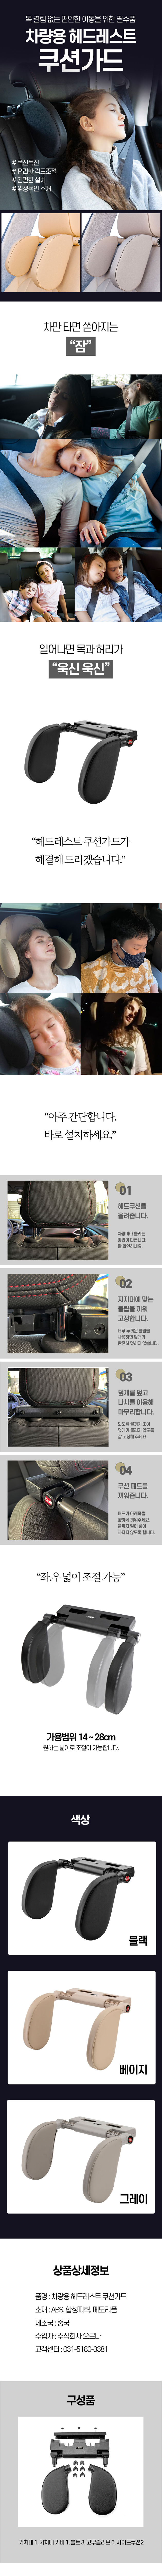 headrest_detail.jpg